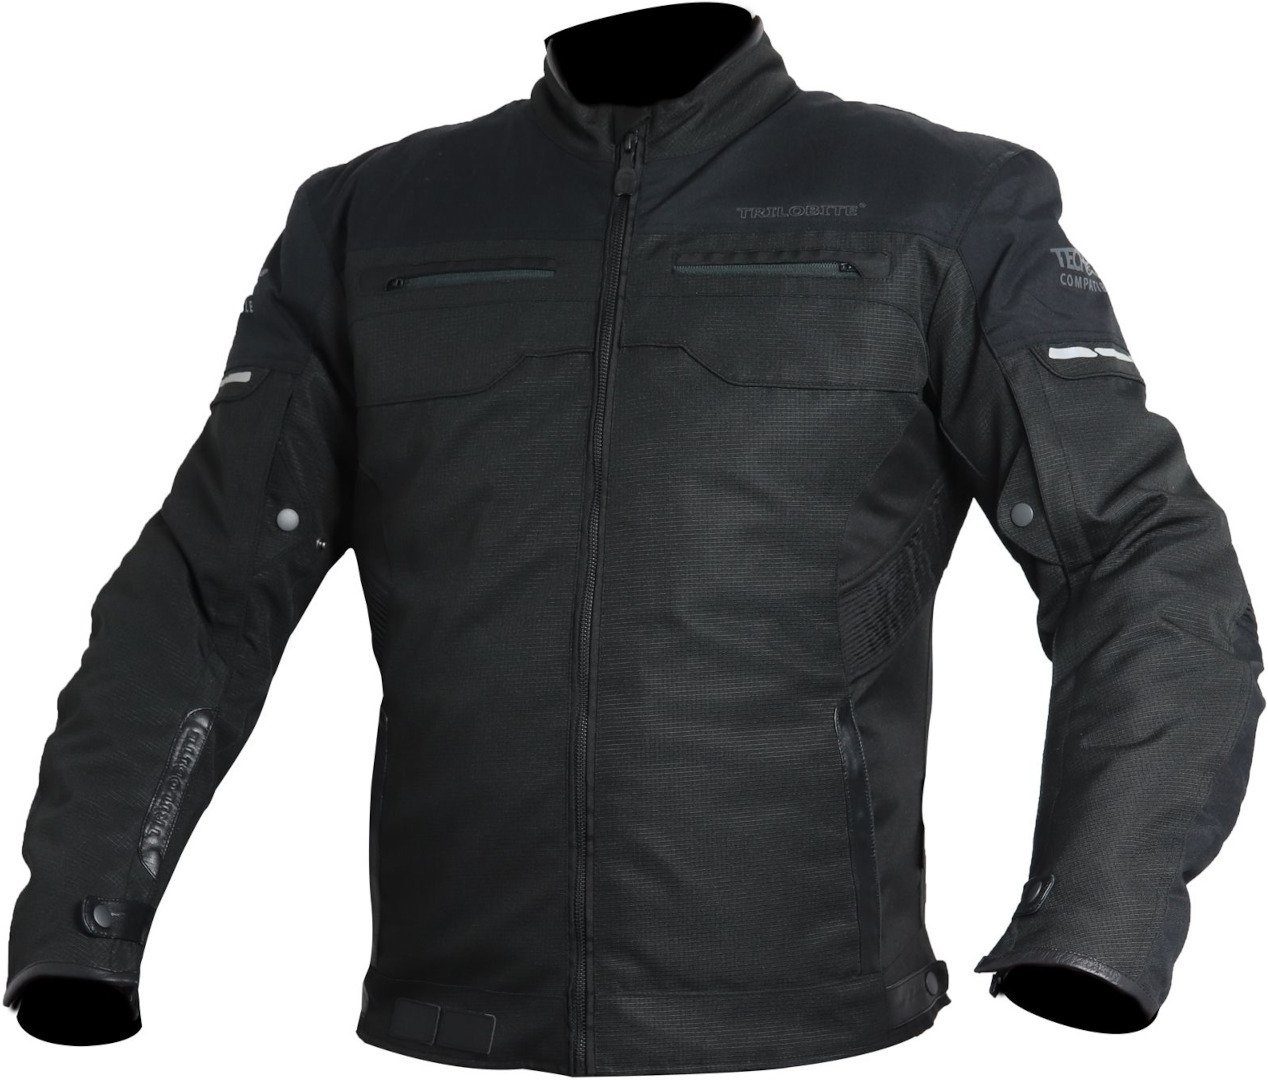 Ride Motorrad Motorradjacke Trilobite Textiljacke Black All